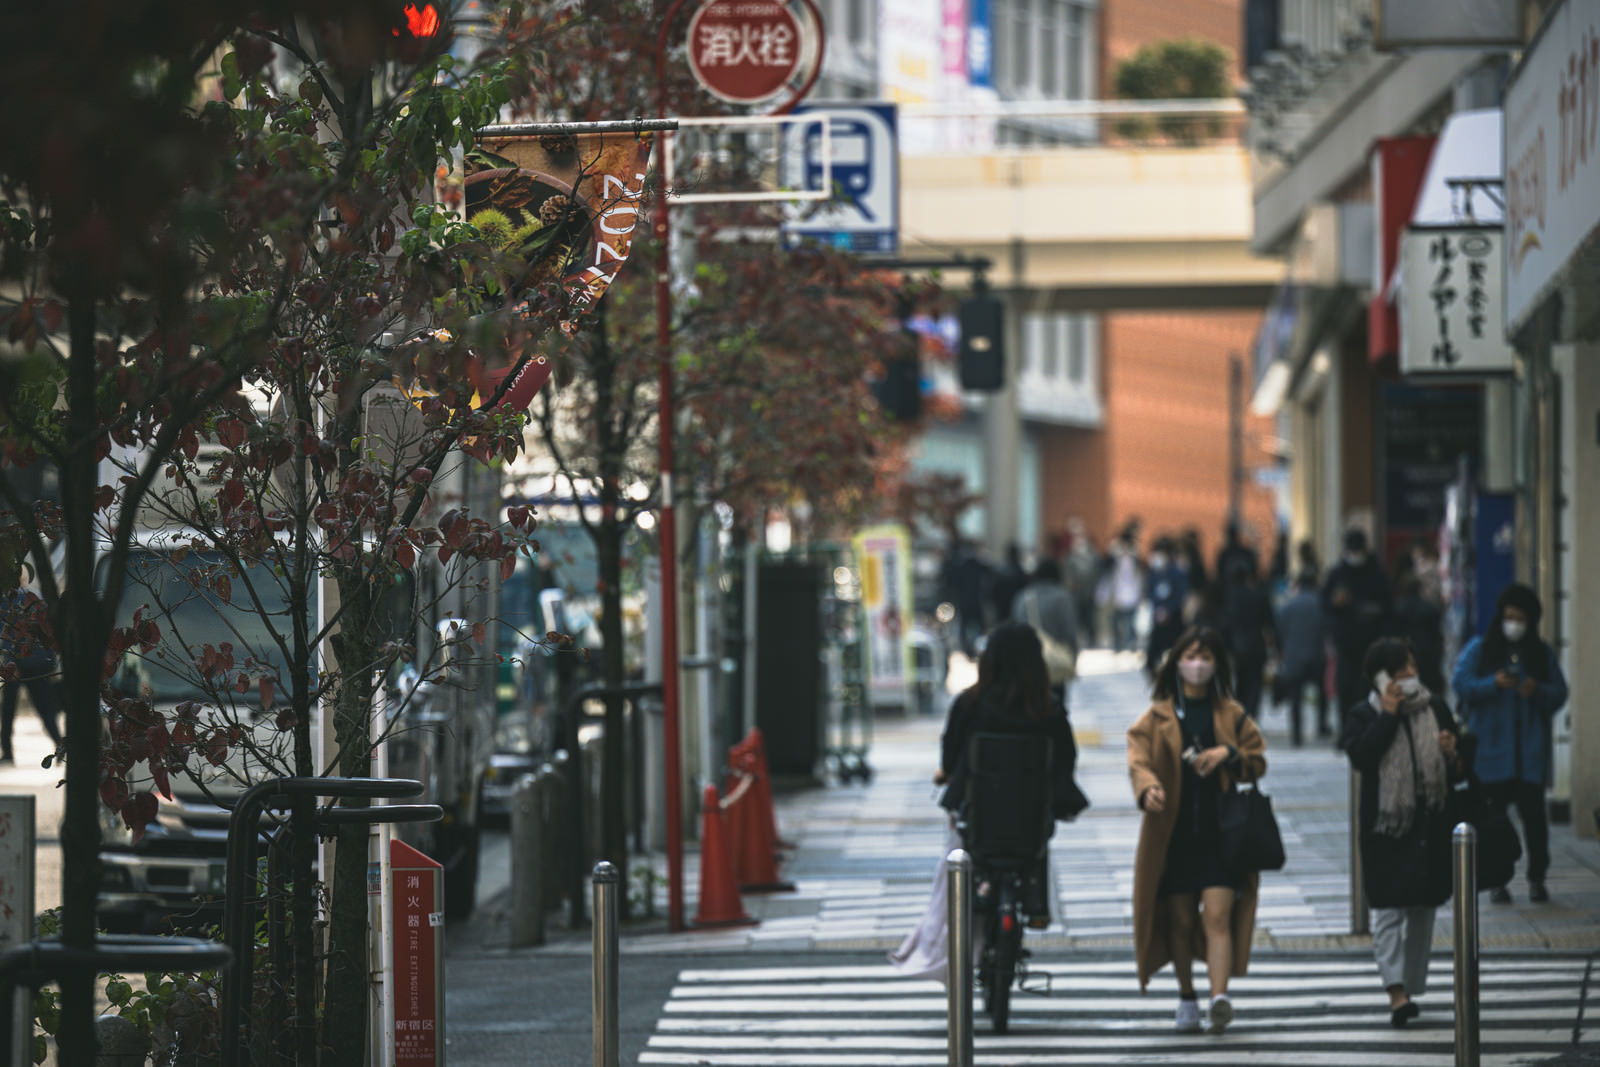 「新宿歩道沿いの街路樹 | フリー素材のぱくたそ」の写真